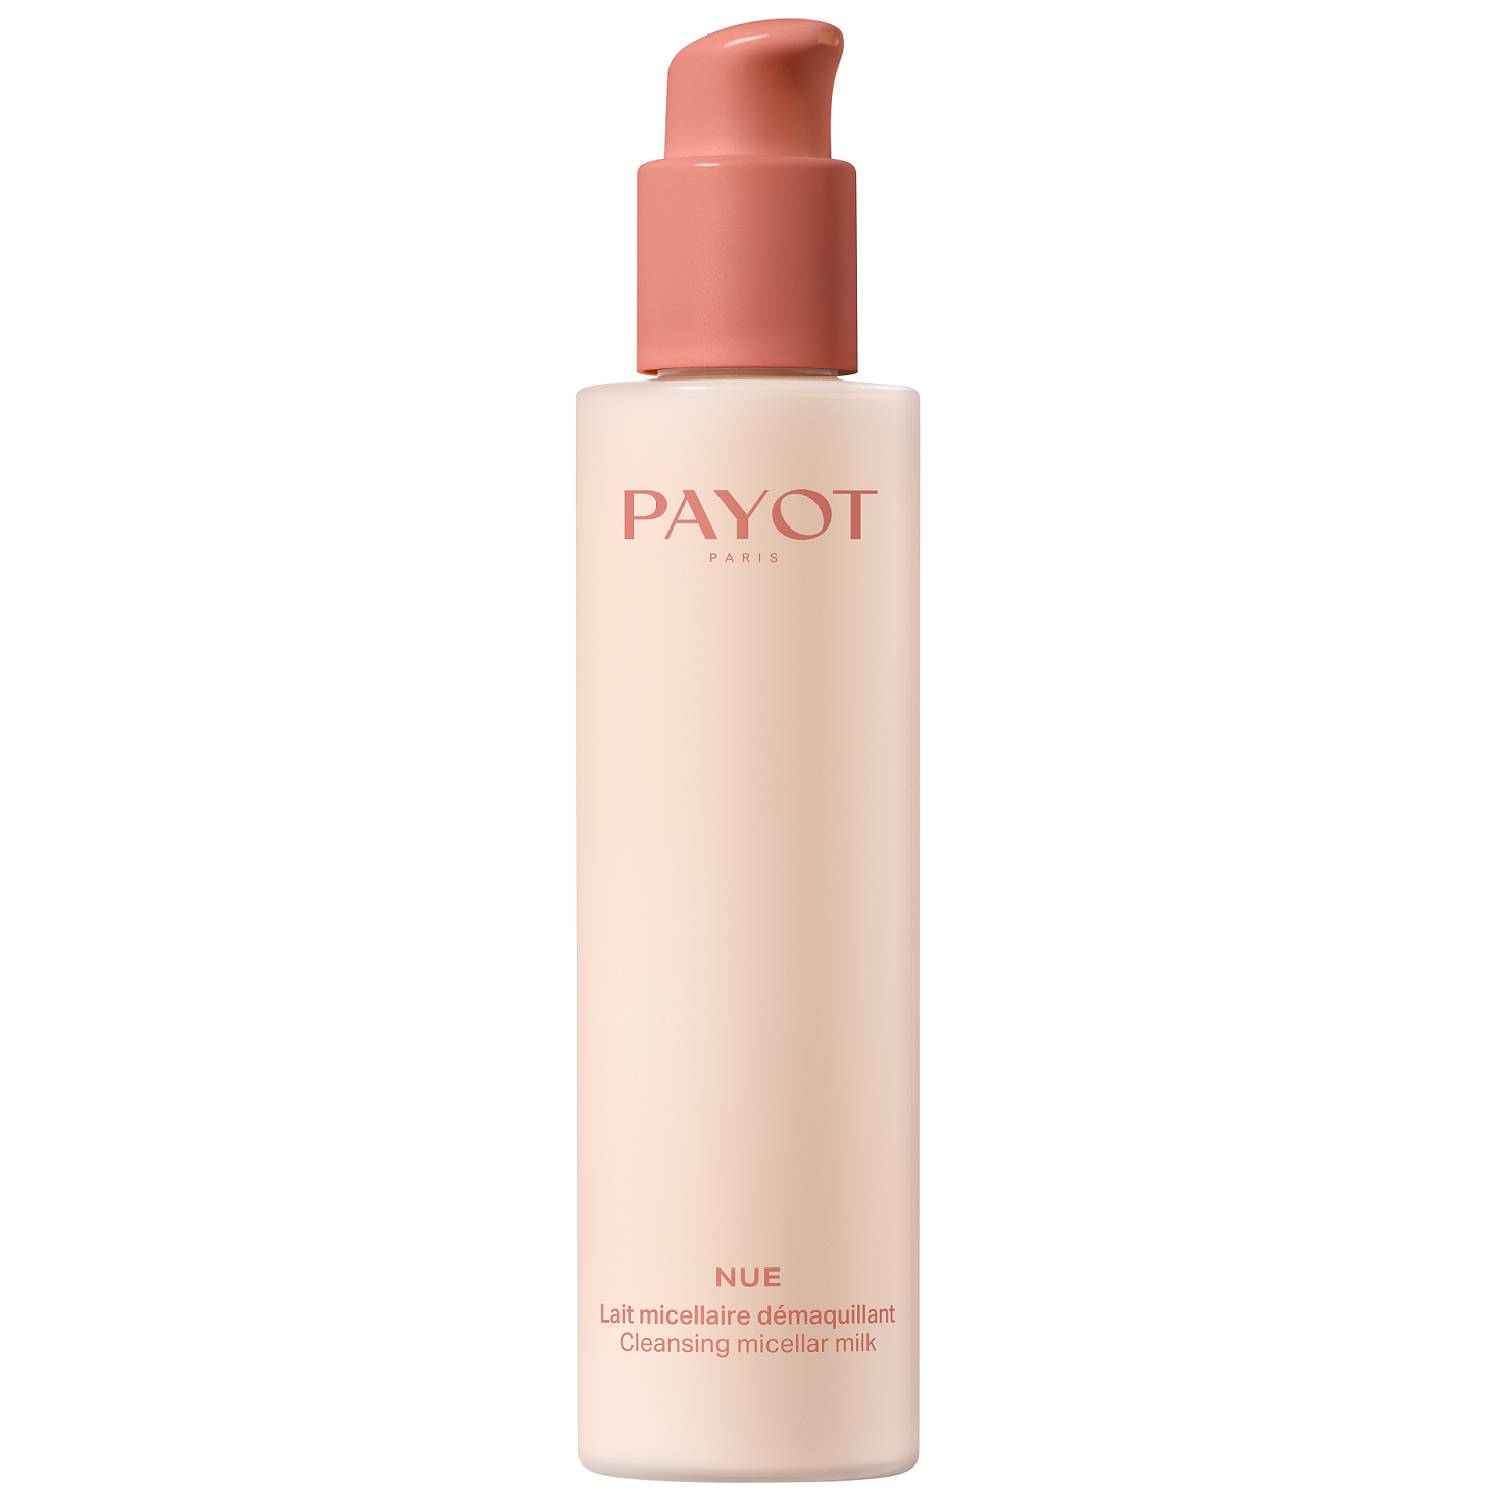 Payot Мицеллярное молочко для снятия макияжа, 200 мл (Payot, Nue) стик для снятия макияжа payot nue 50 г